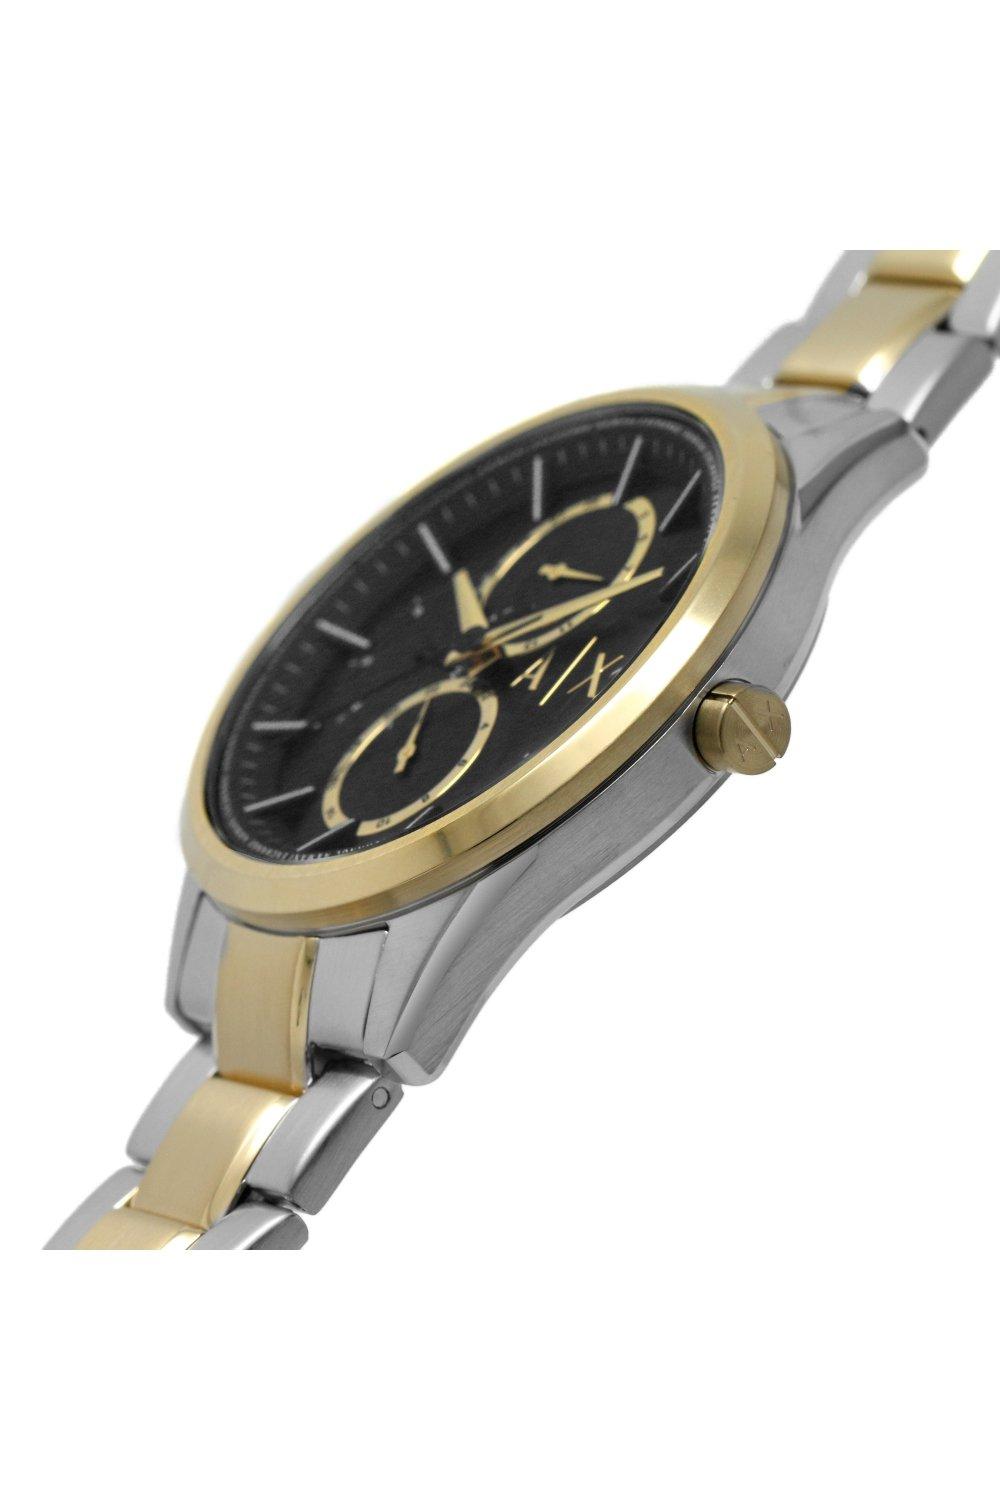 Watches | Stainless Steel Fashion Analogue Quartz Multifunction Watch -  Ax1865 | Armani Exchange | Quarzuhren